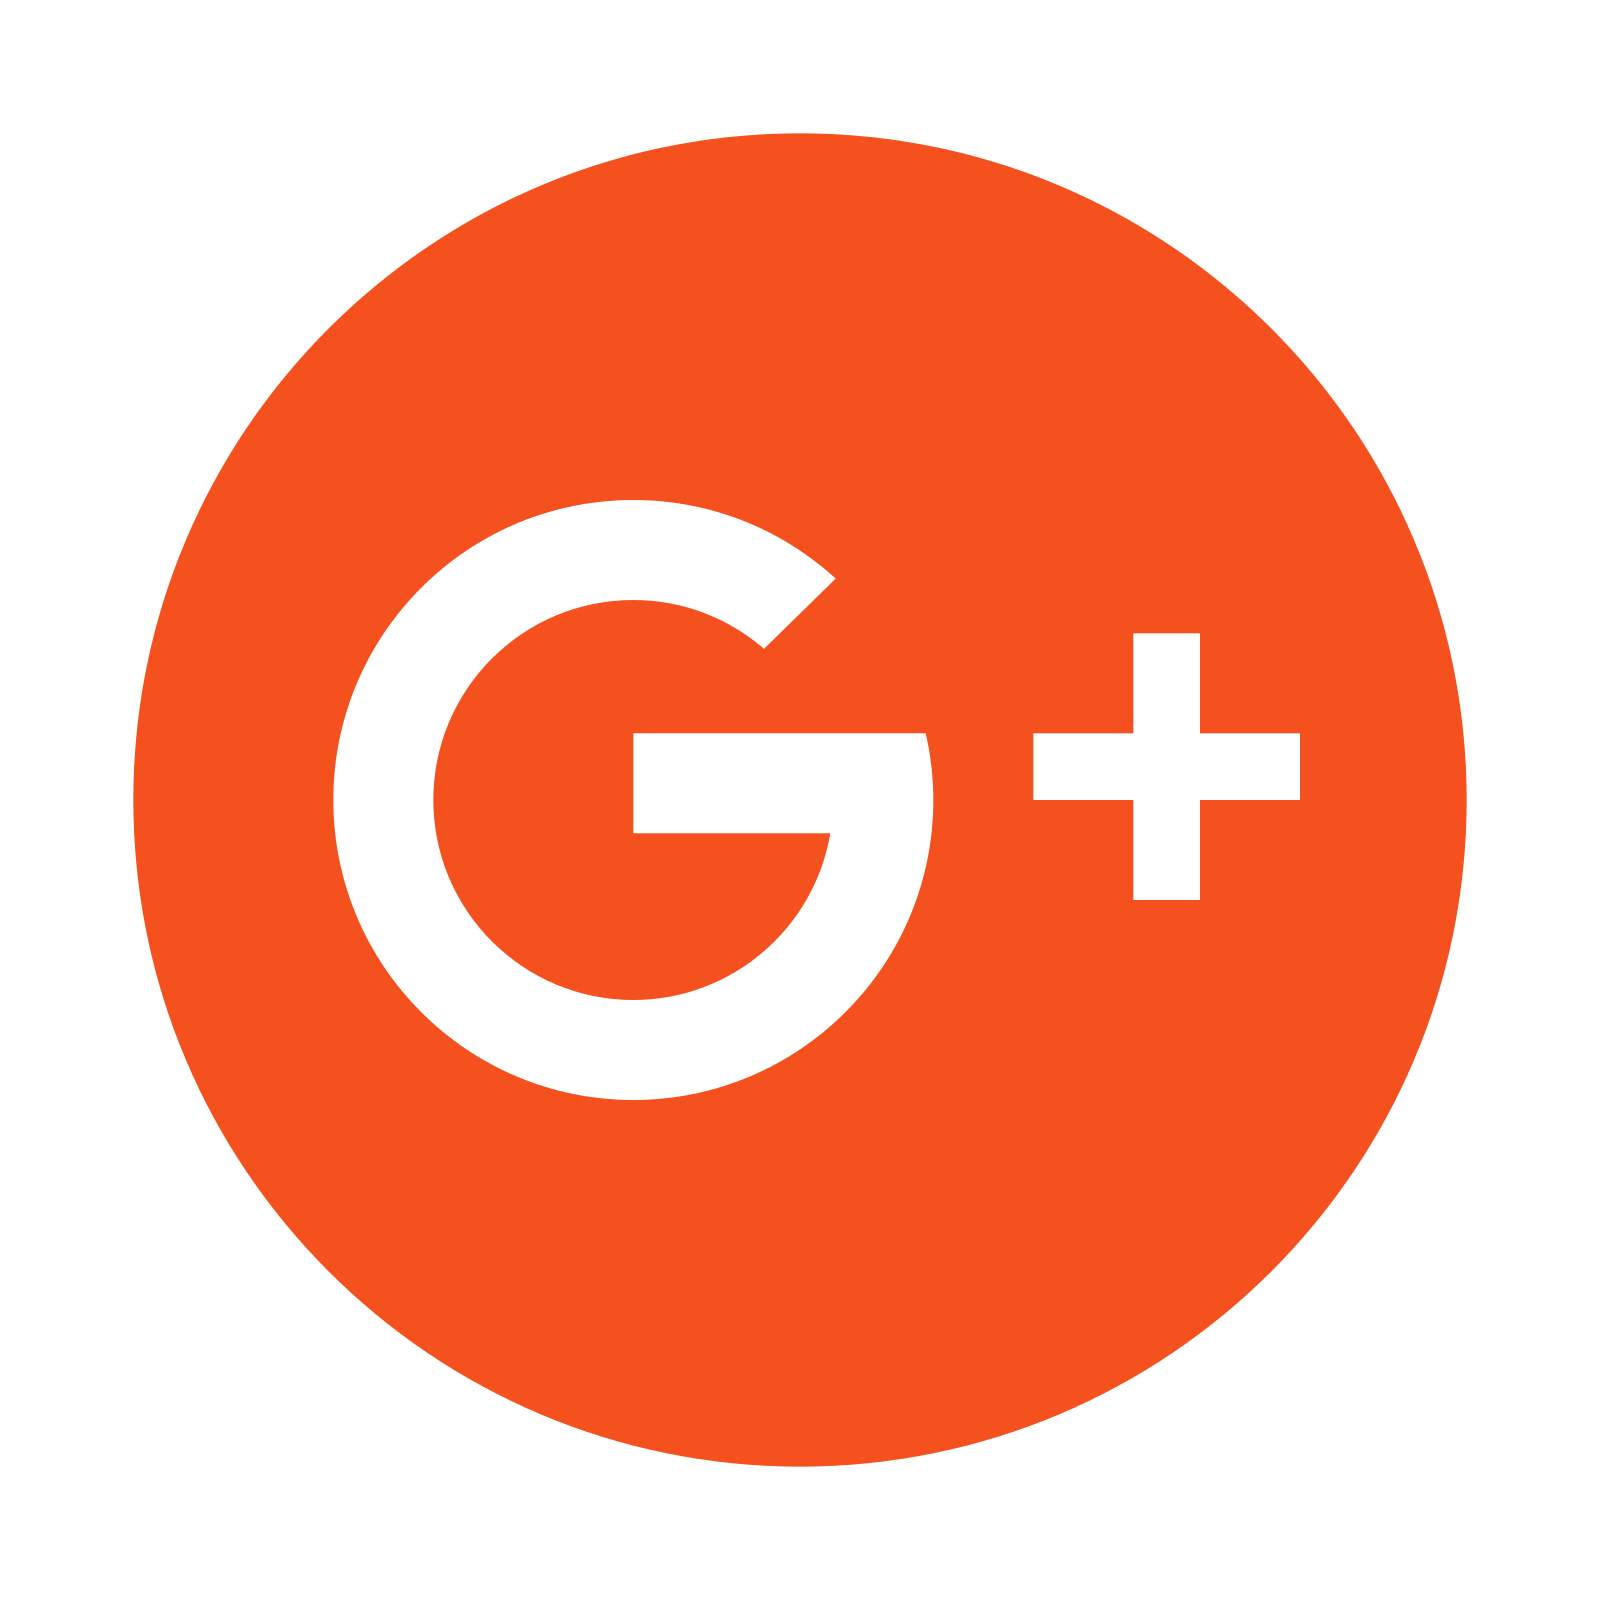 Google Plus Icon - A Plus, Transparent background PNG HD thumbnail